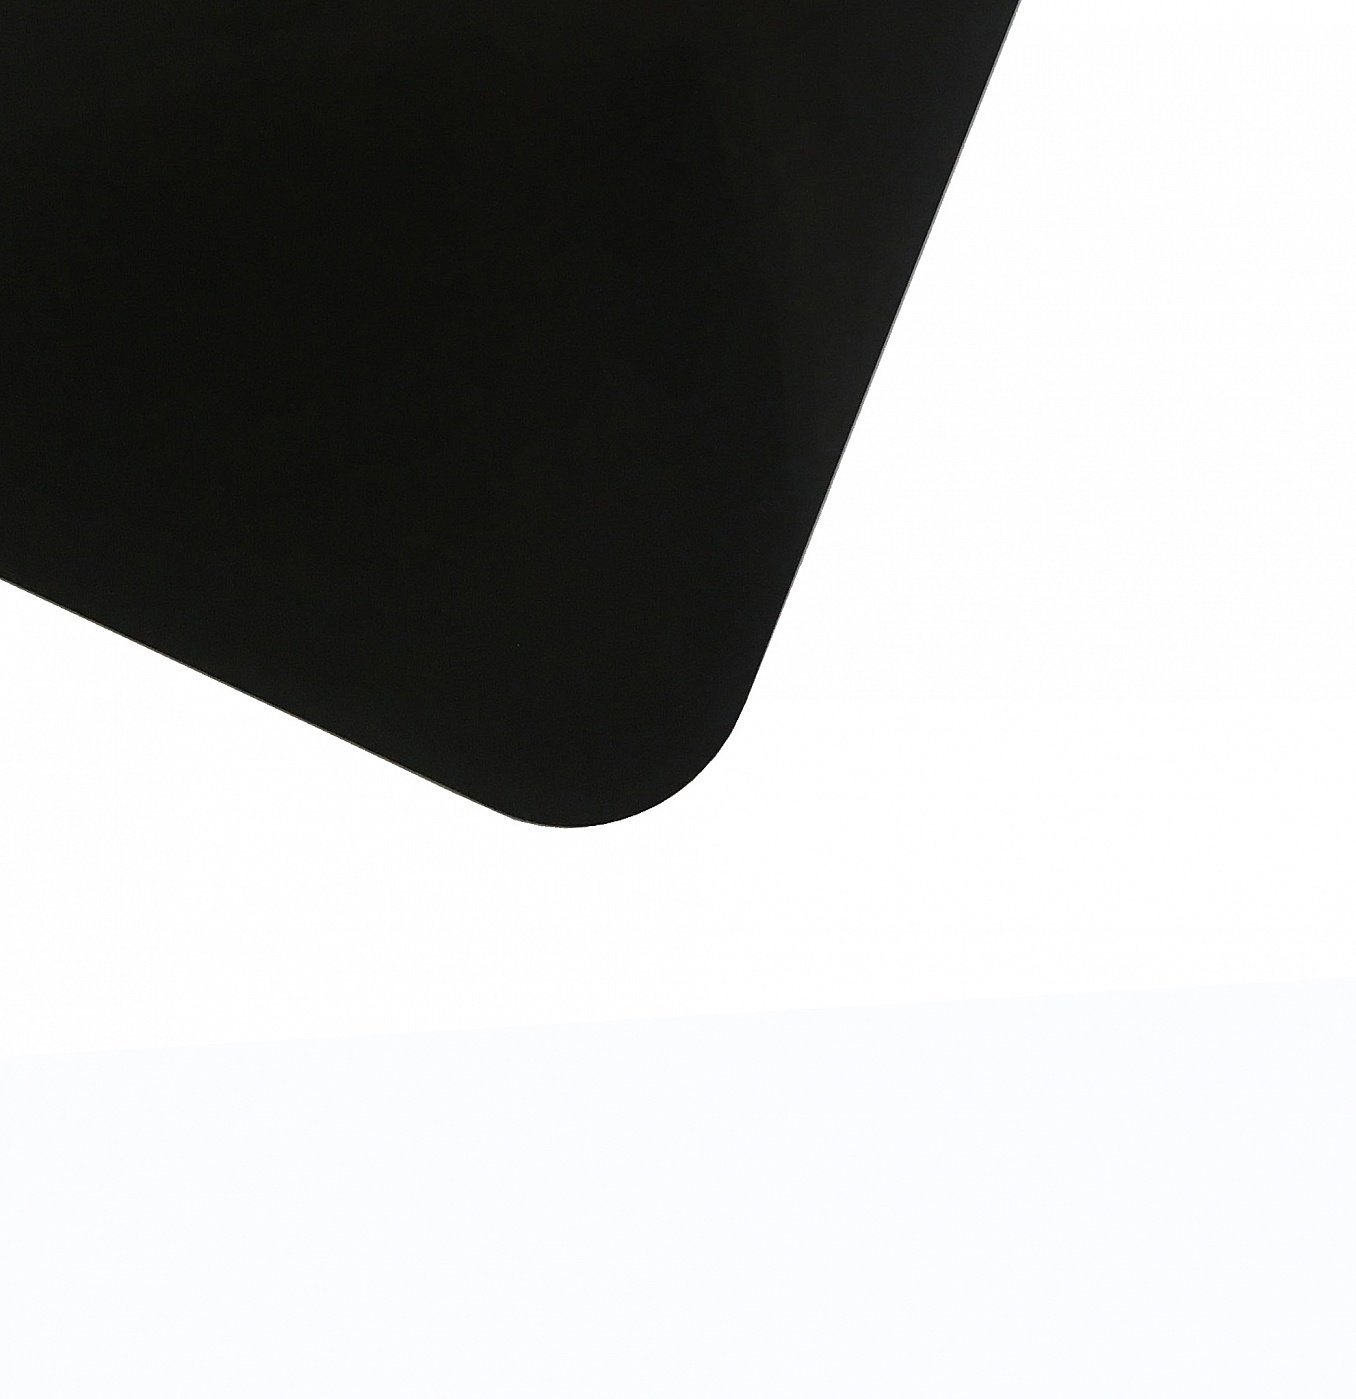 Планшет для пленэра из оргстекла 3 мм, под лист размера А4, цвет черный блокнот скетчбук планшет идей зеленый